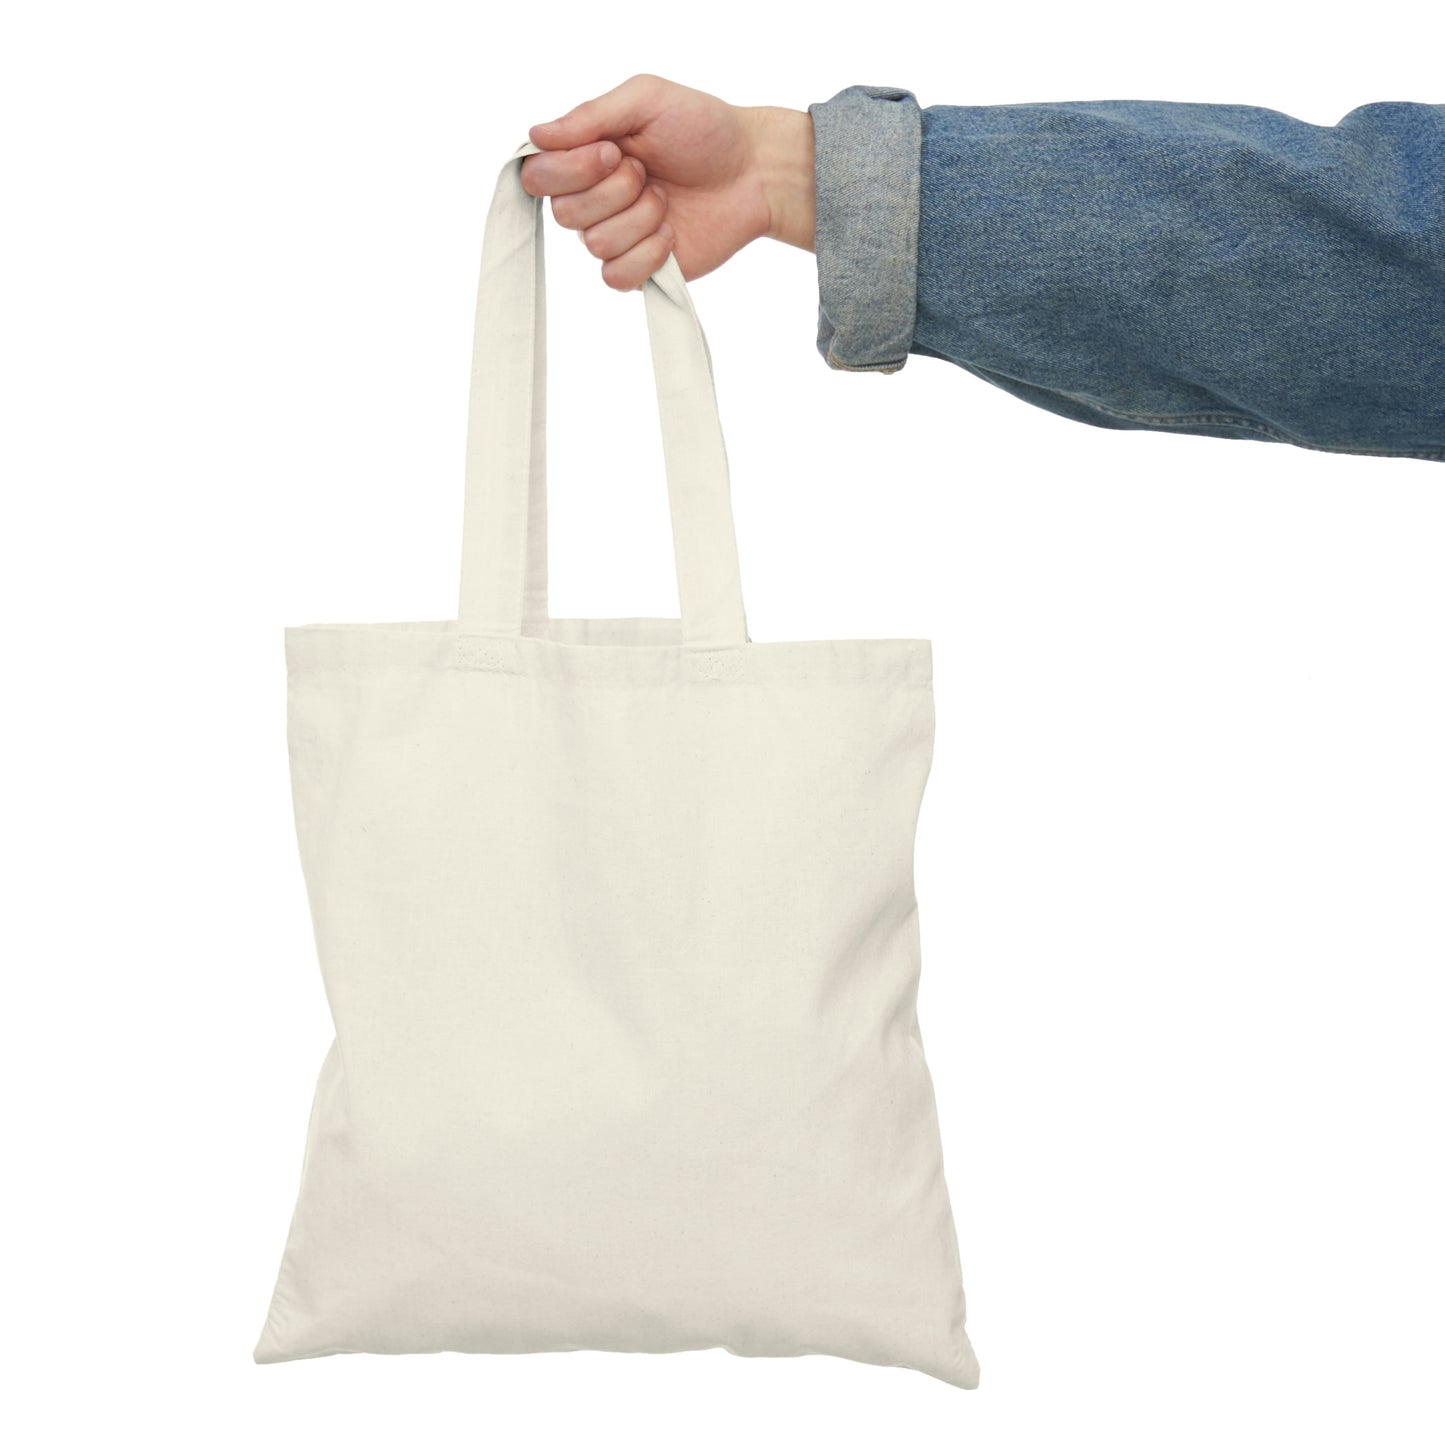 Kalopsia - Natural Tote Bag